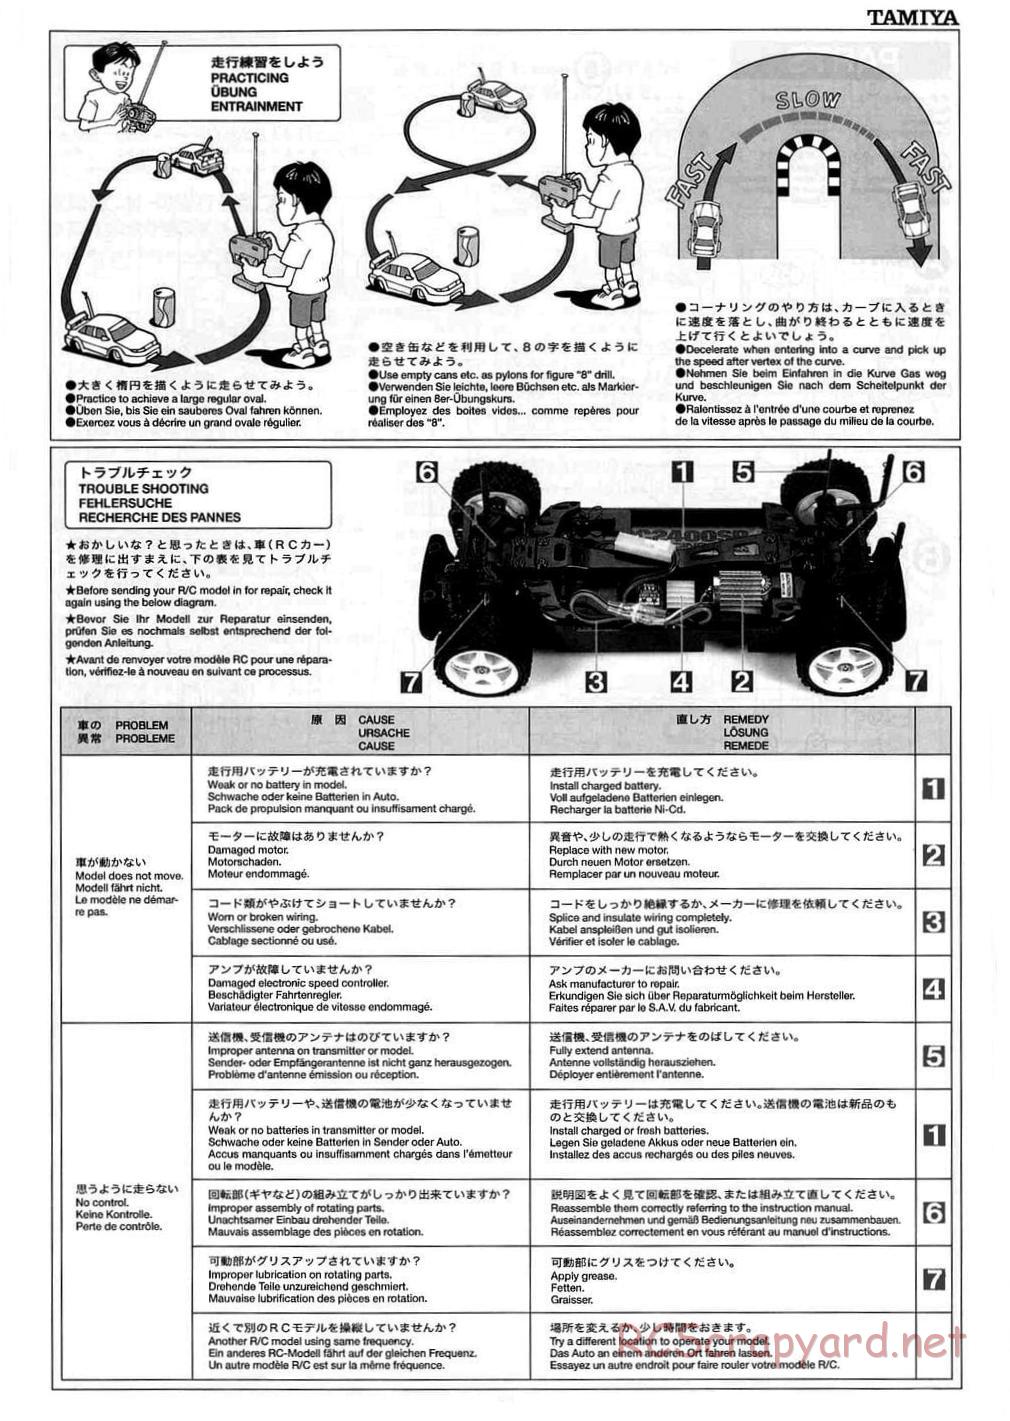 Tamiya - TB-01 Chassis - Manual - Page 15